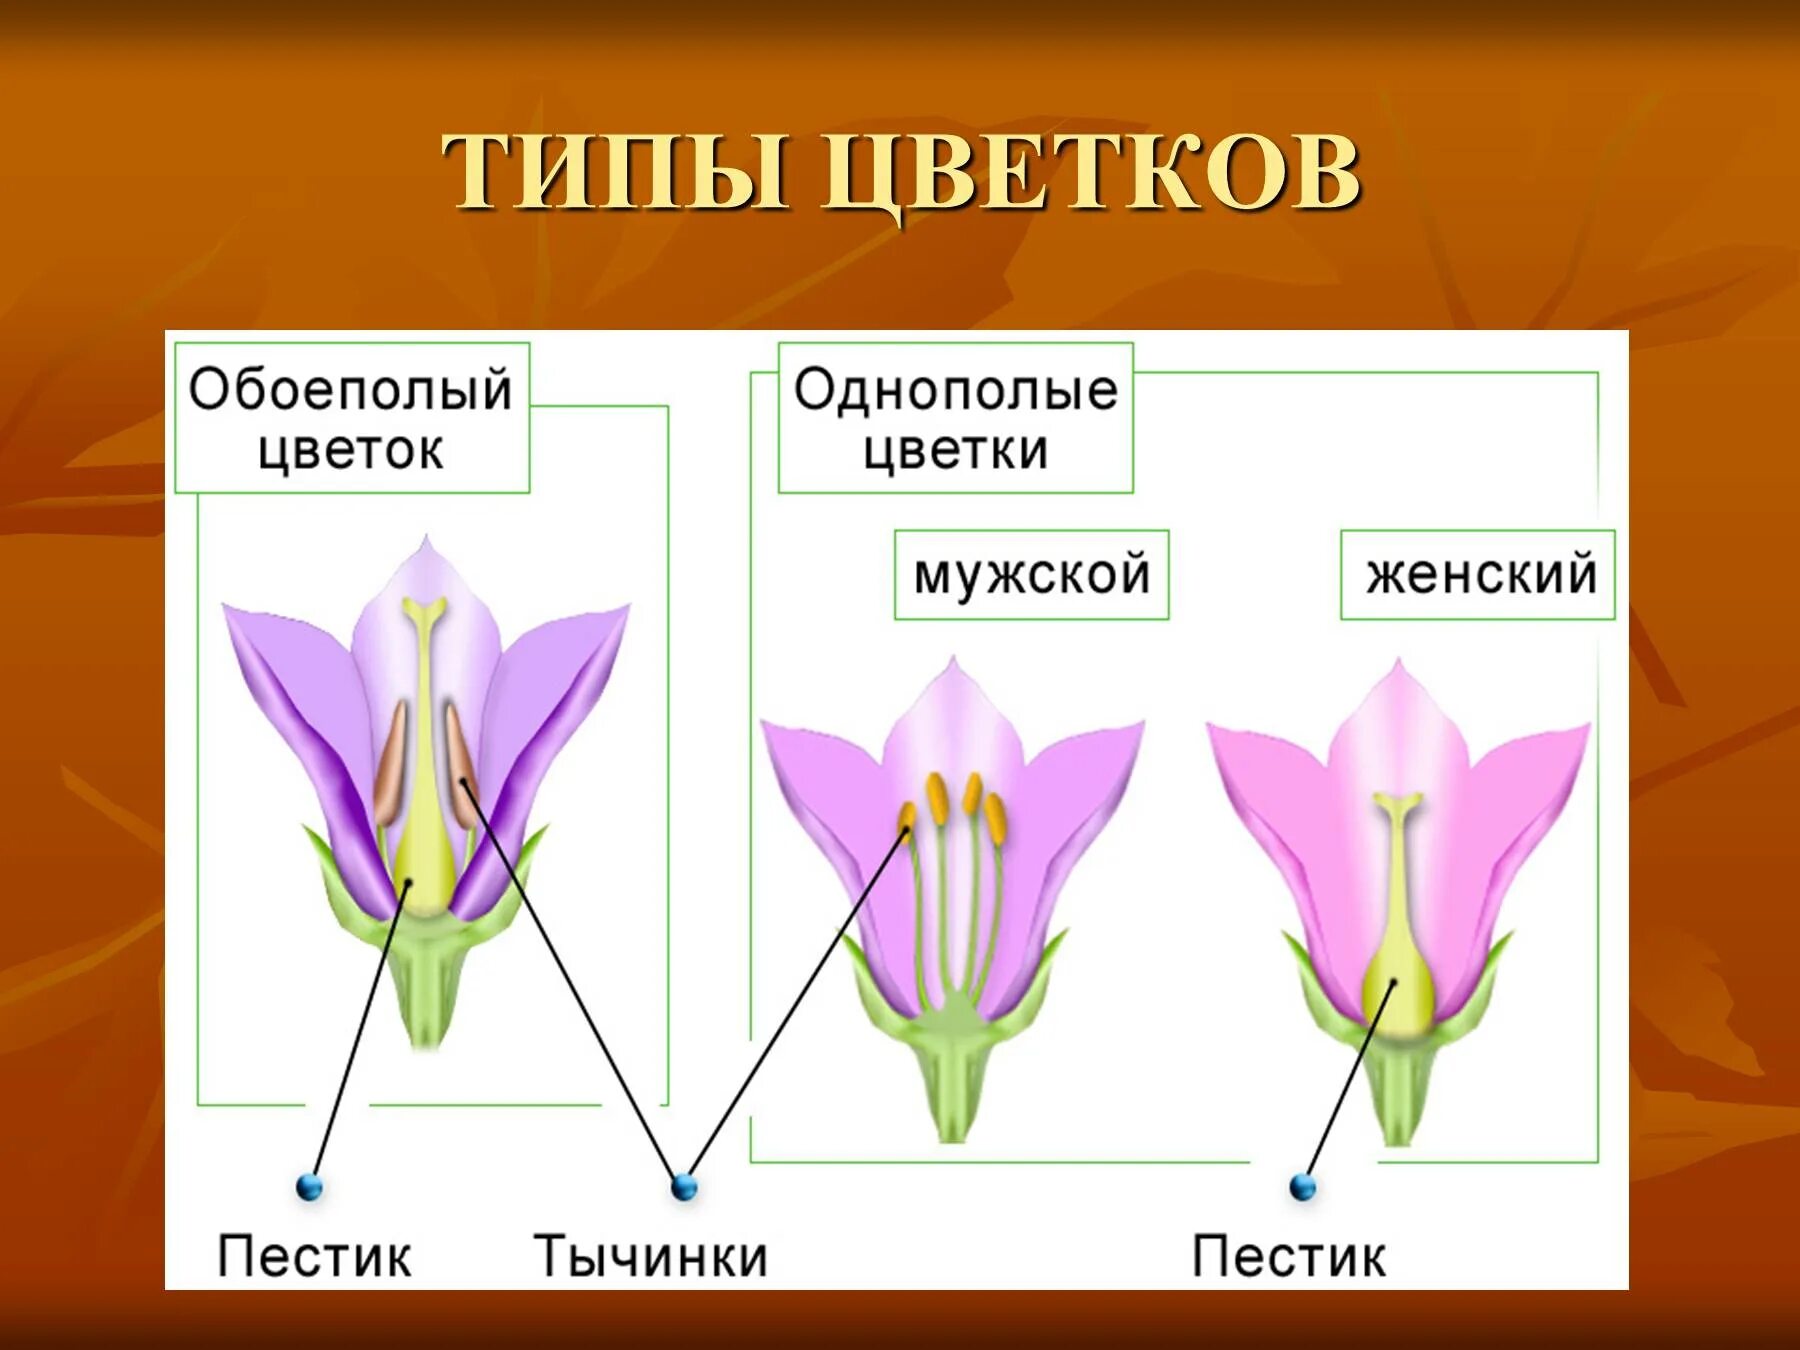 Мужской и женский органы цветка. Однополые и обоеполые цветки. Типы цветков обоеполые. Цветы виды. Обоеполый, мужской, женский цветок.